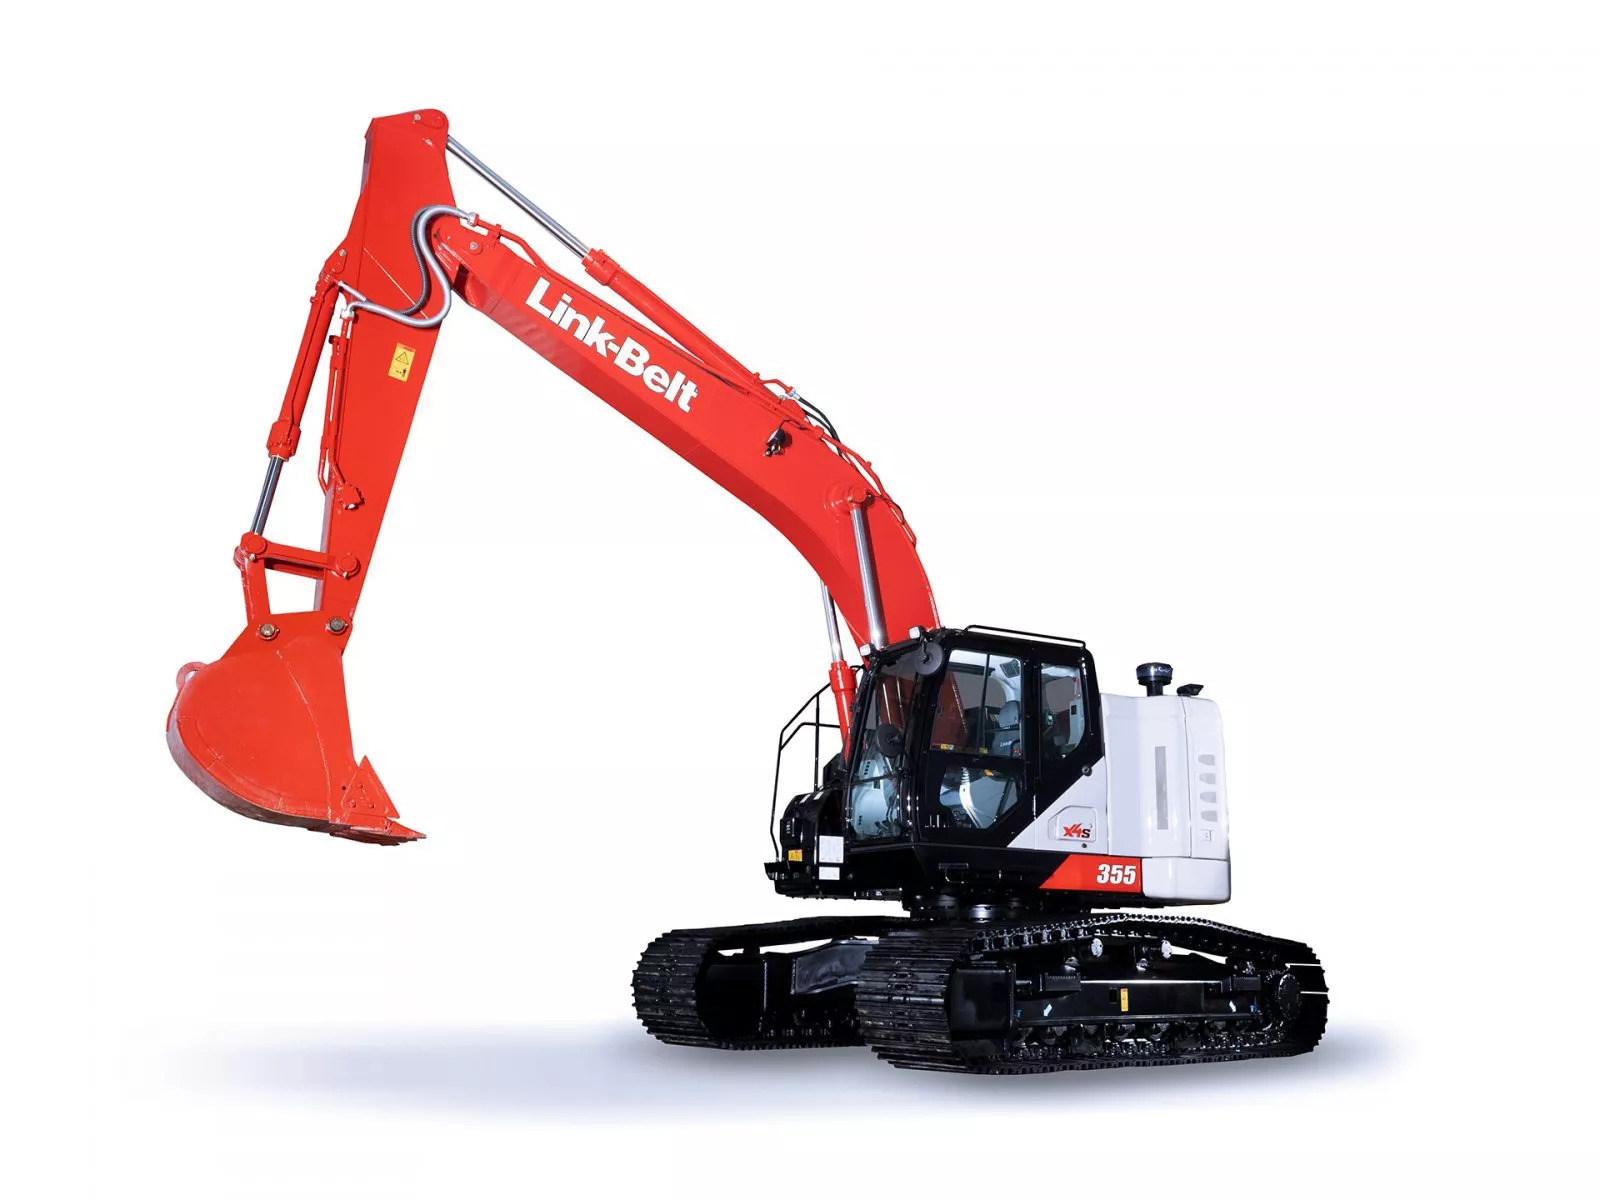 Link-Belt excavator 355X4S | Product Link-Belt excavator 355X4S